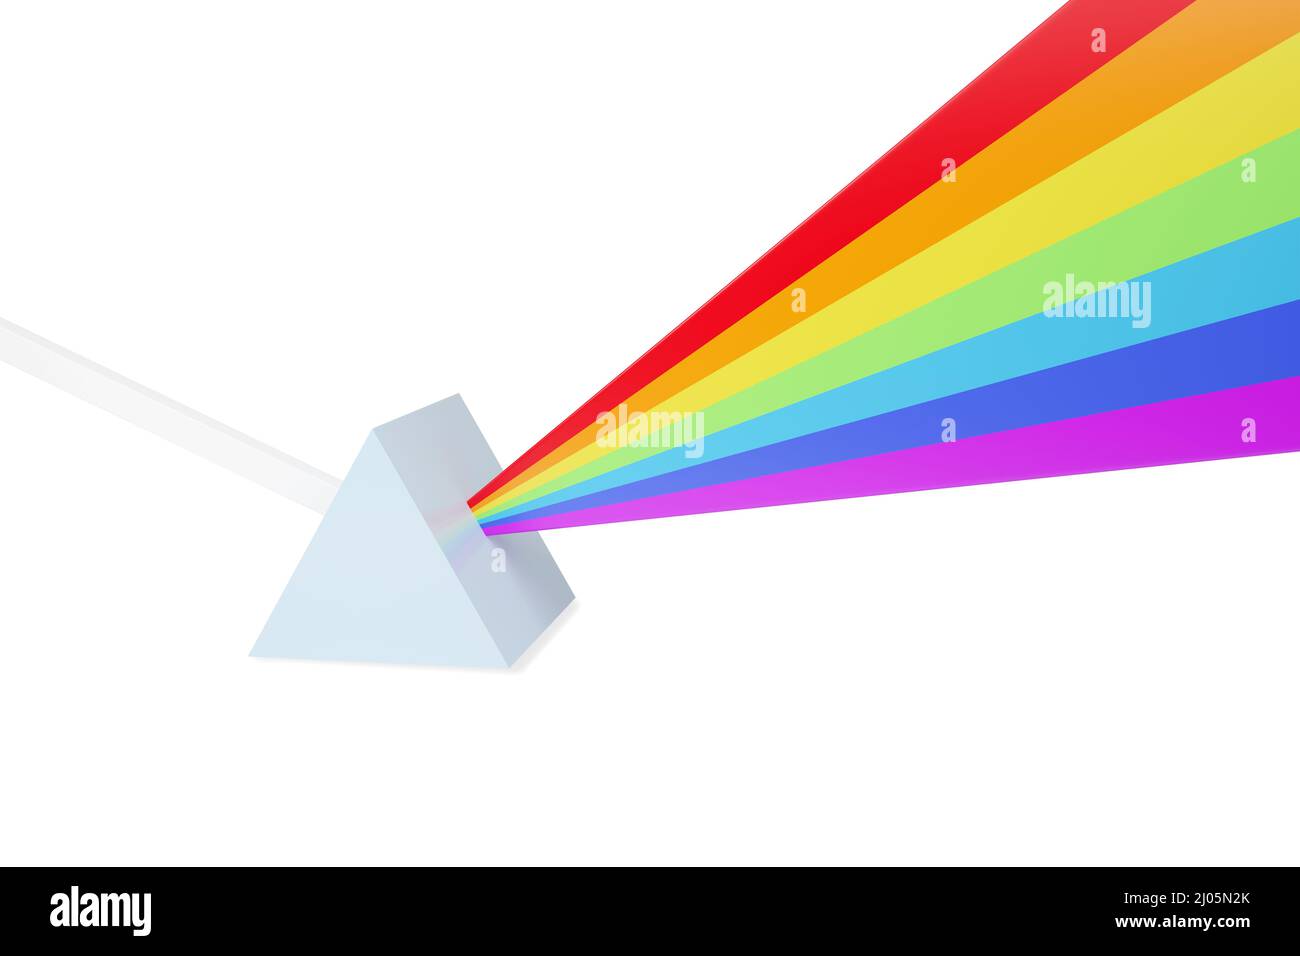 Représentation abstraite d'un rayon de lumière heurtant un prisme et se dispersant dans un spectre de couleurs. 3d illustration. Banque D'Images